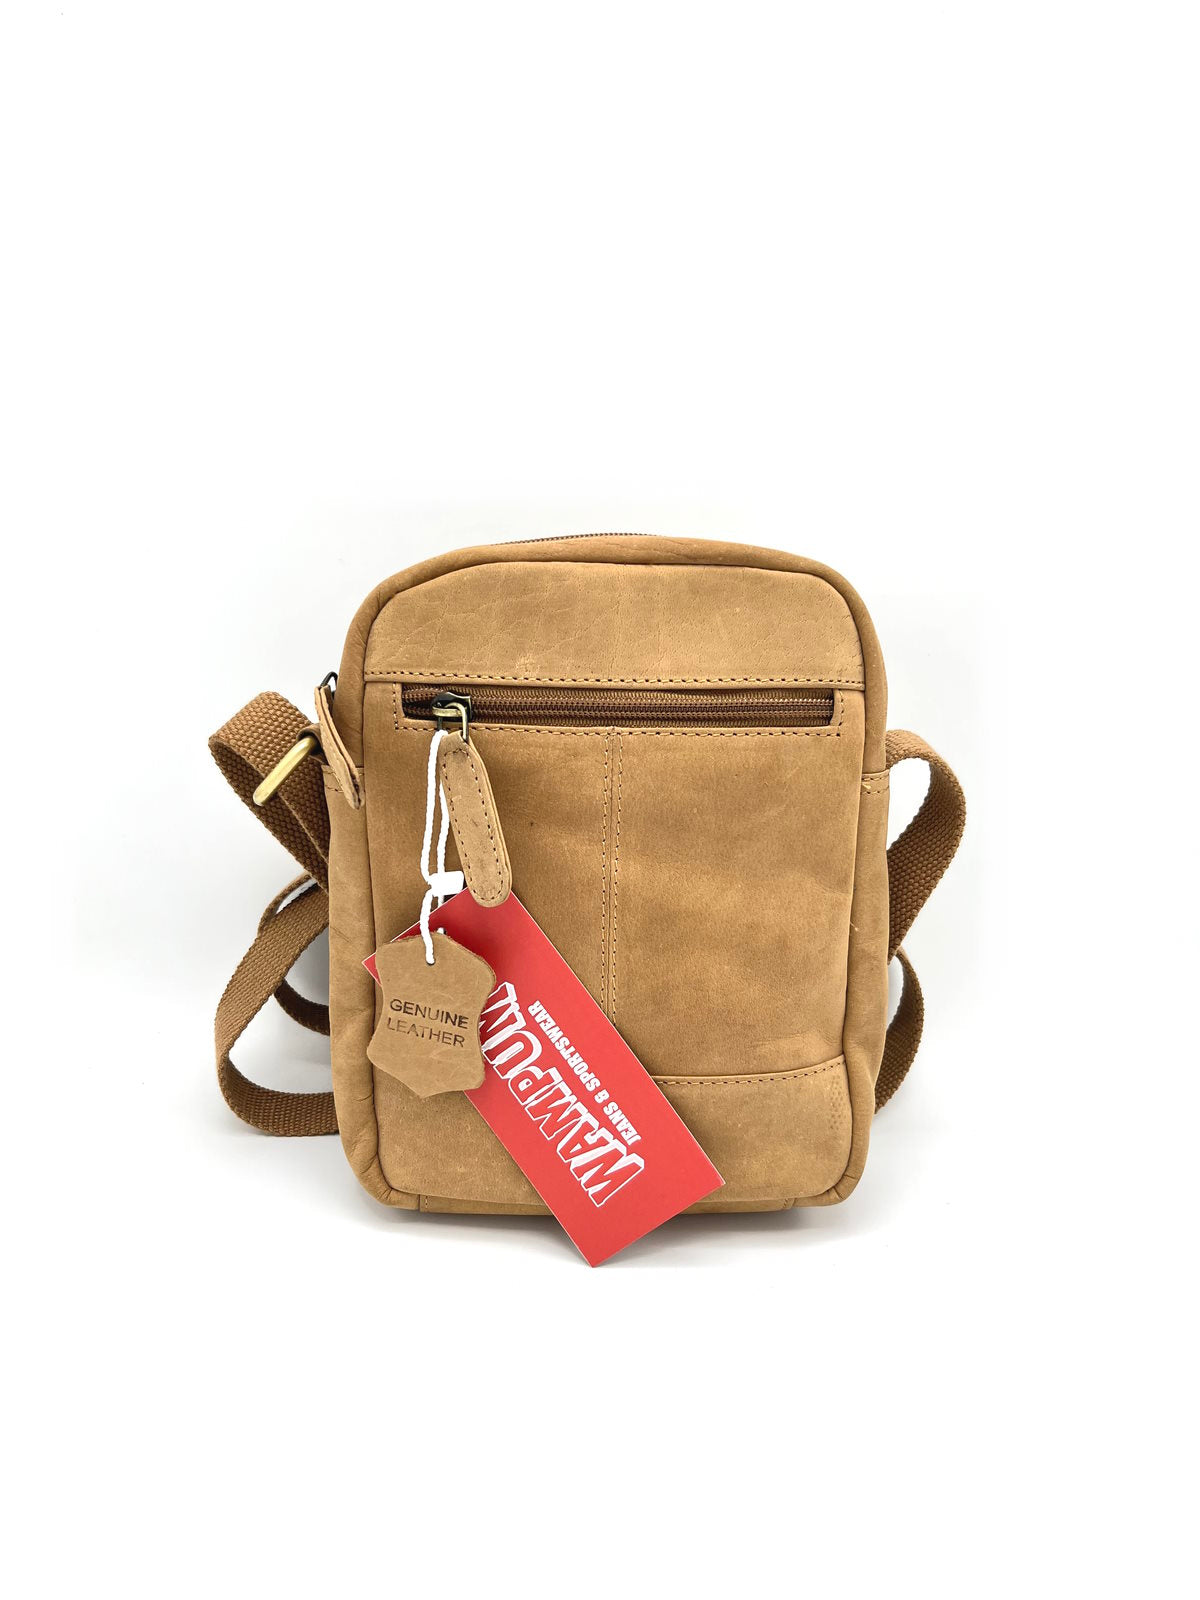 Brand WAMPUM, Genuine Leather Messenger Bag, art. BAG219.425